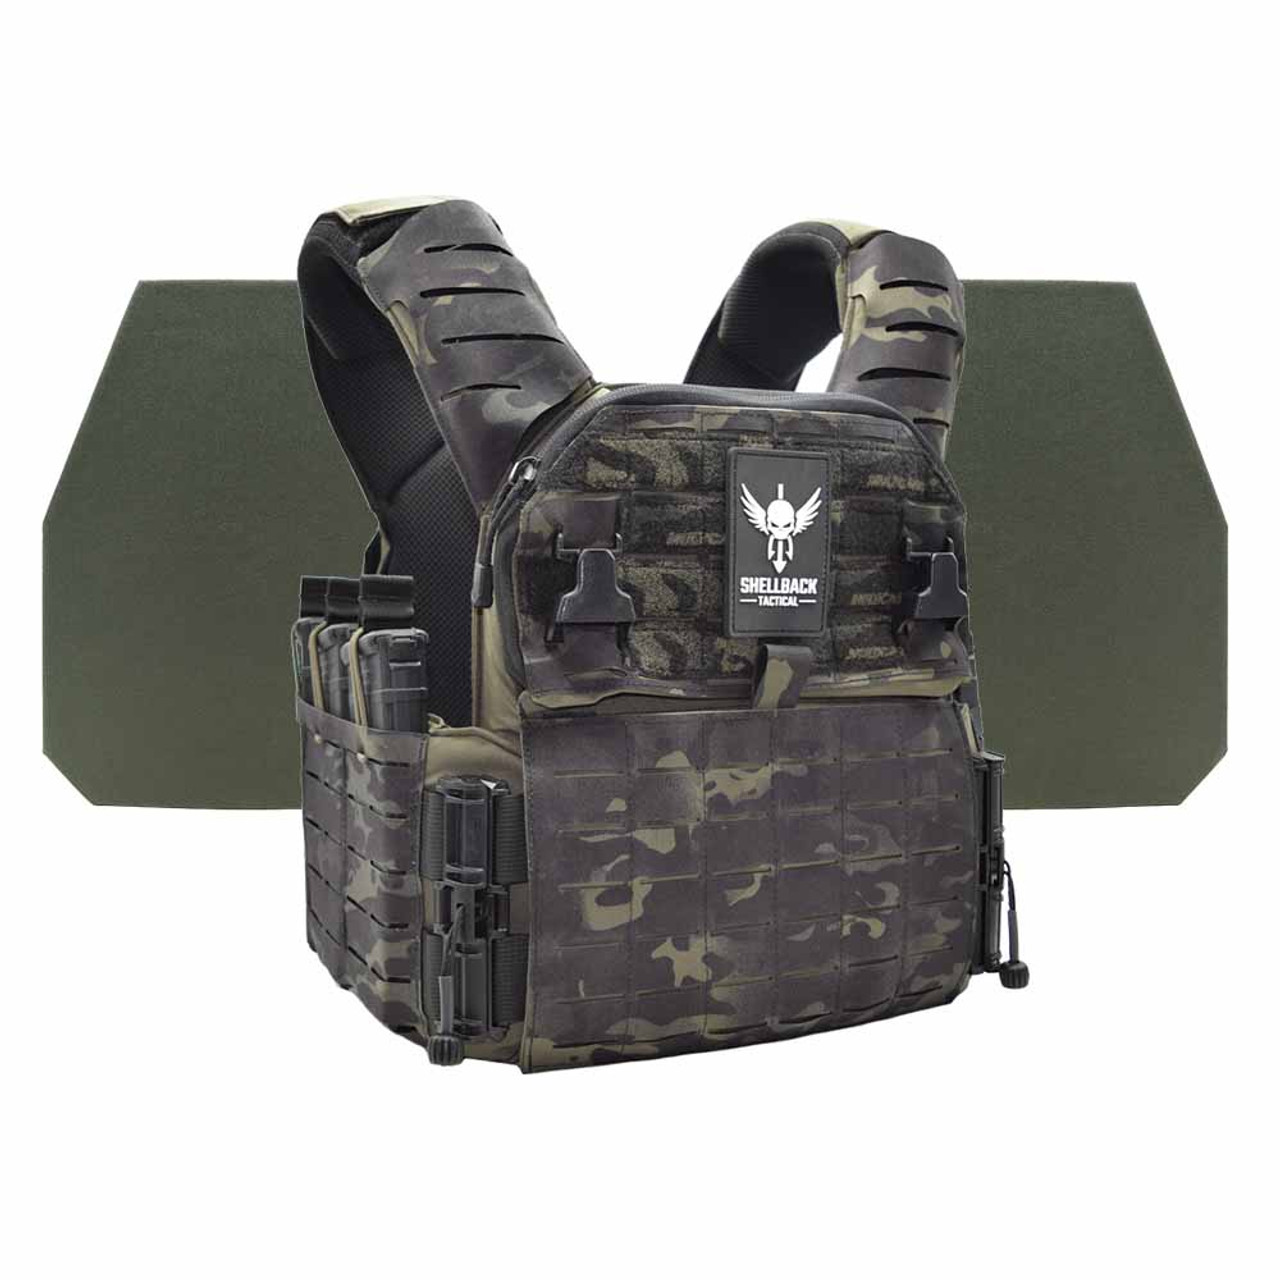 Shellback Tactical Banshee Elite 3.0 Level IV Body Armor Kit with